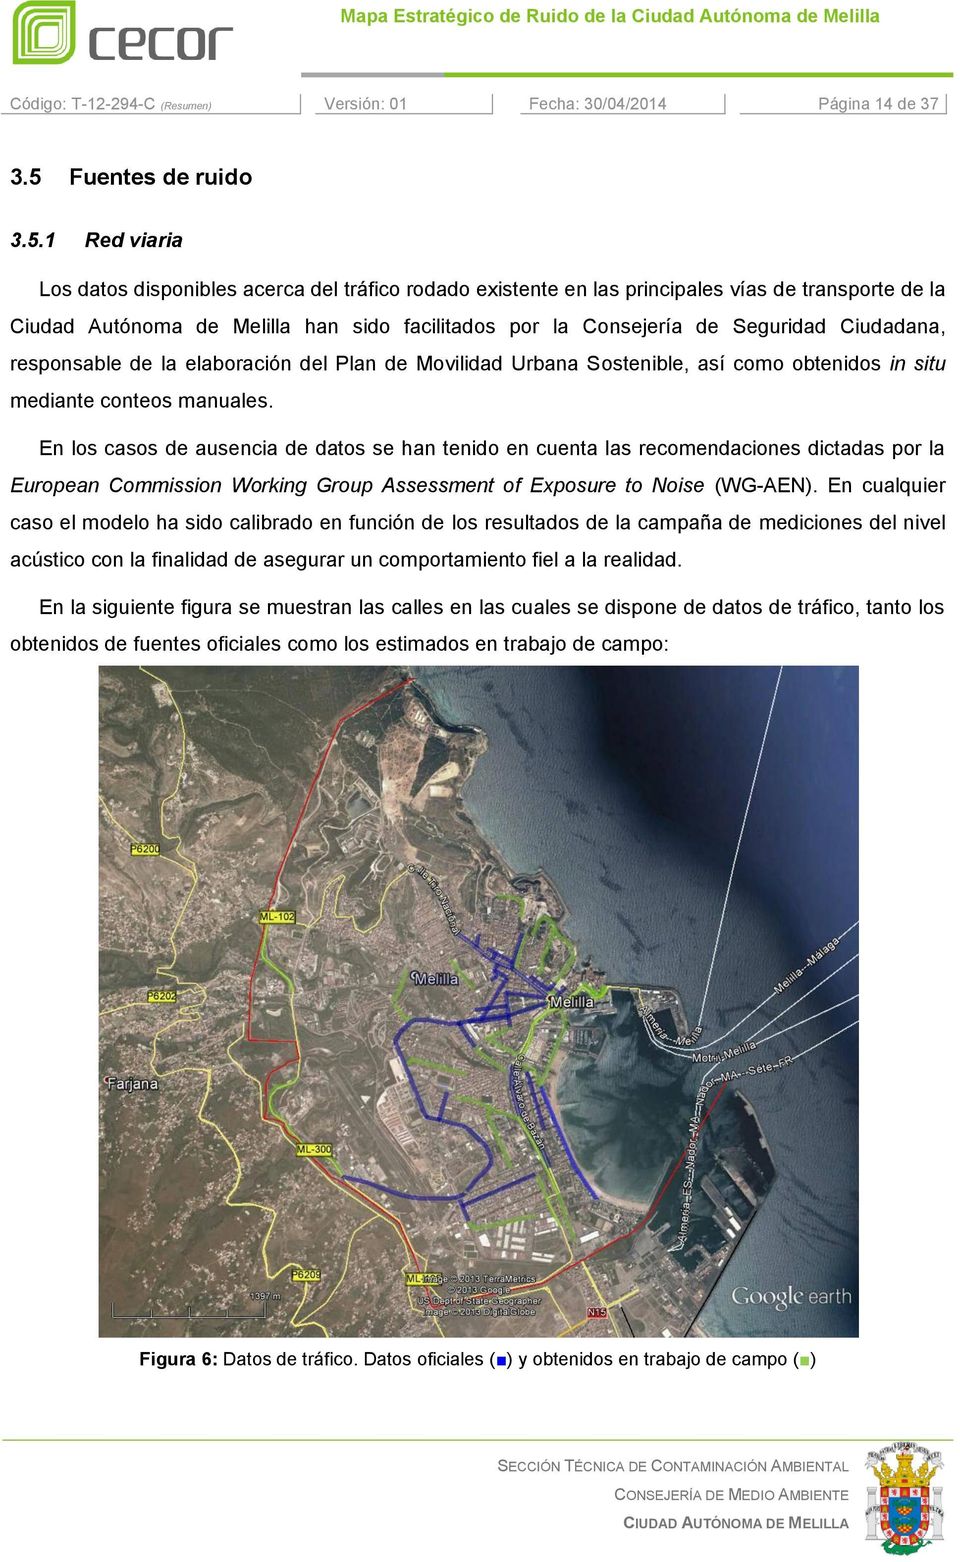 1 Red viaria Los datos disponibles acerca del tráfico rodado existente en las principales vías de transporte de la Ciudad Autónoma de Melilla han sido facilitados por la Consejería de Seguridad